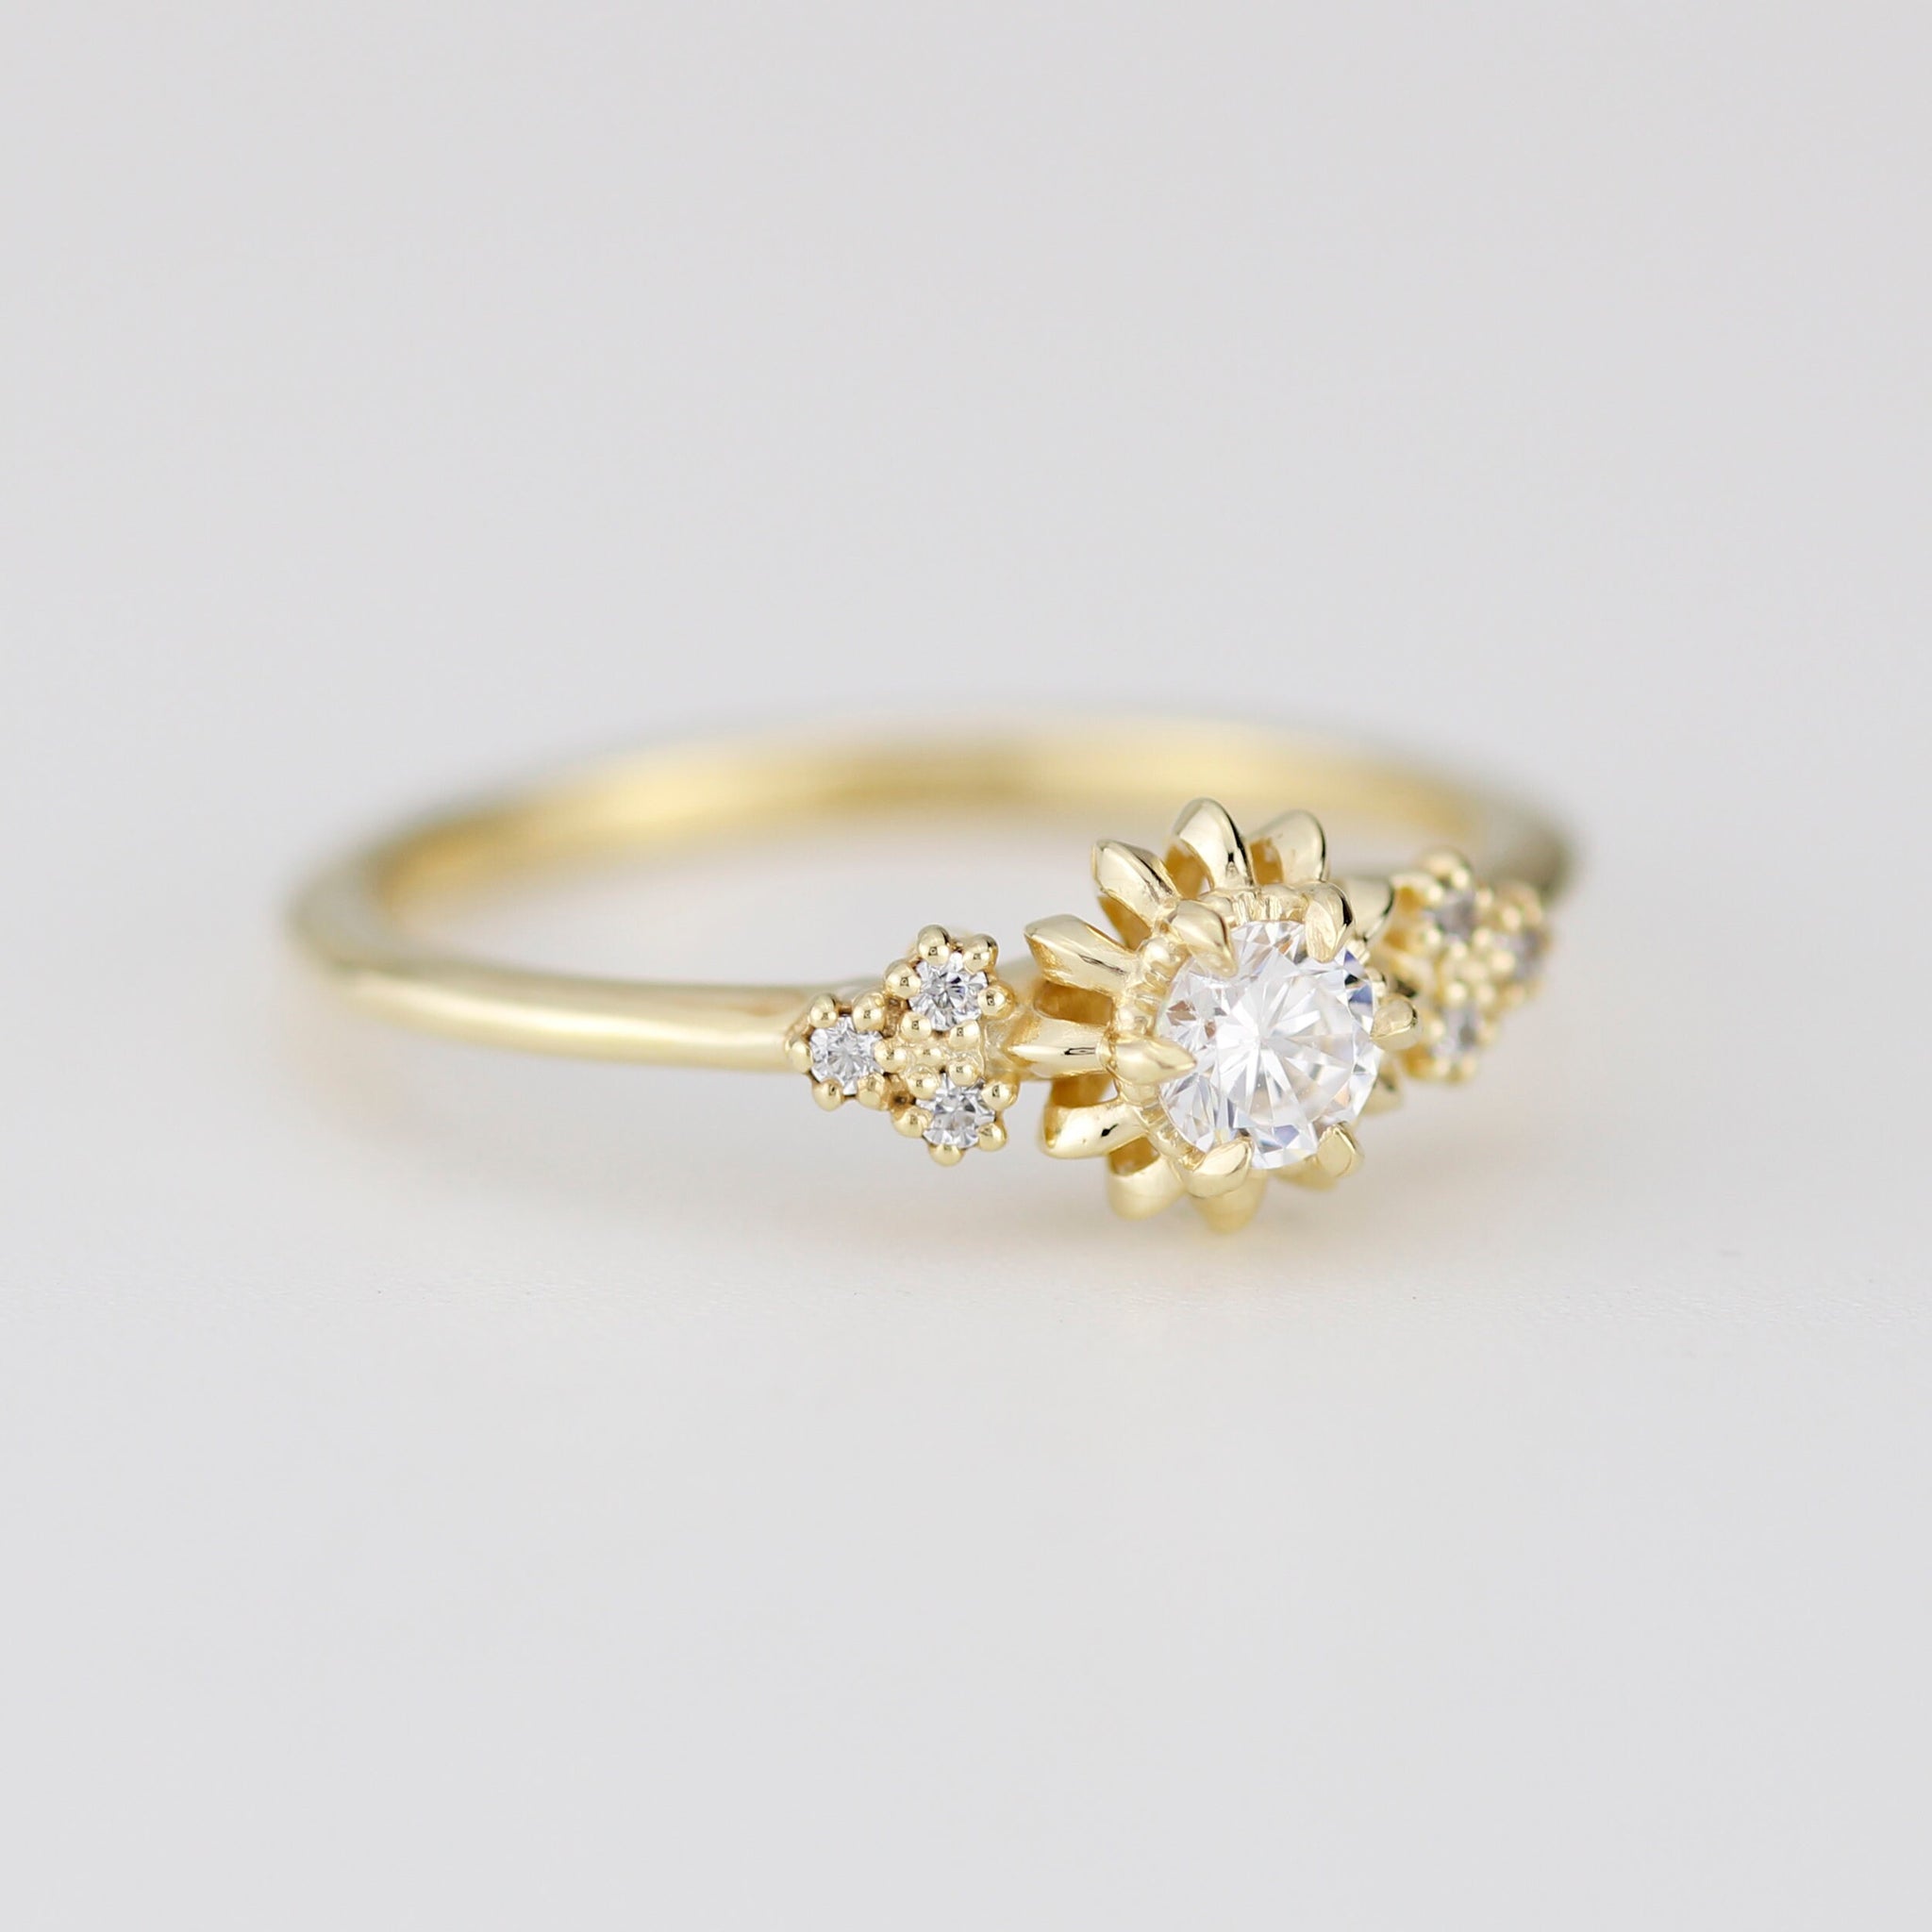 Sunflower ring diamond, seven stone engagement ring, vintage inspired ...